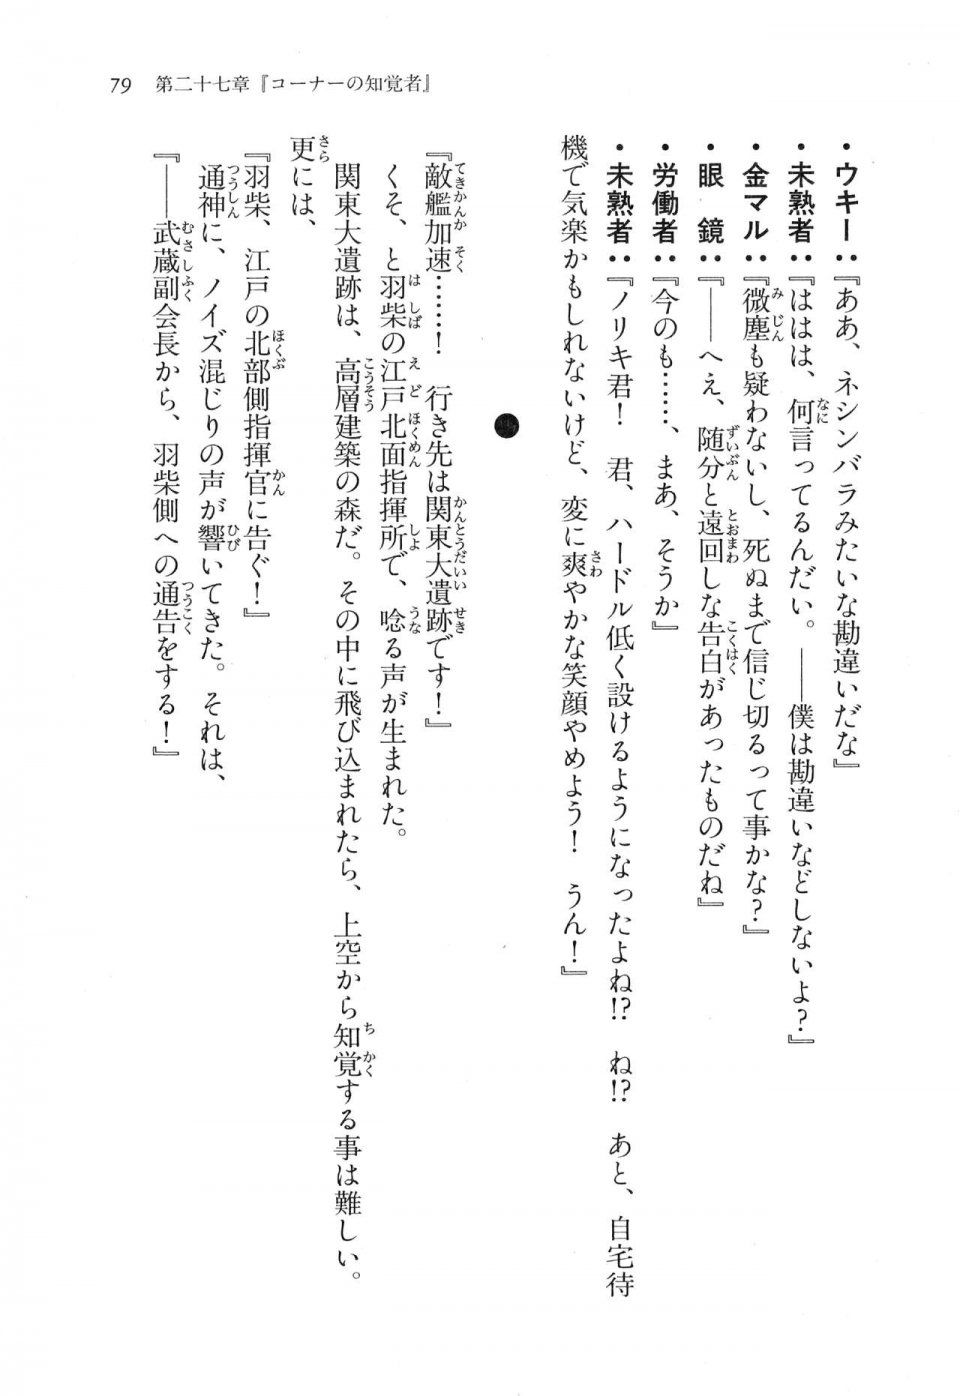 Kyoukai Senjou no Horizon LN Vol 17(7B) - Photo #79